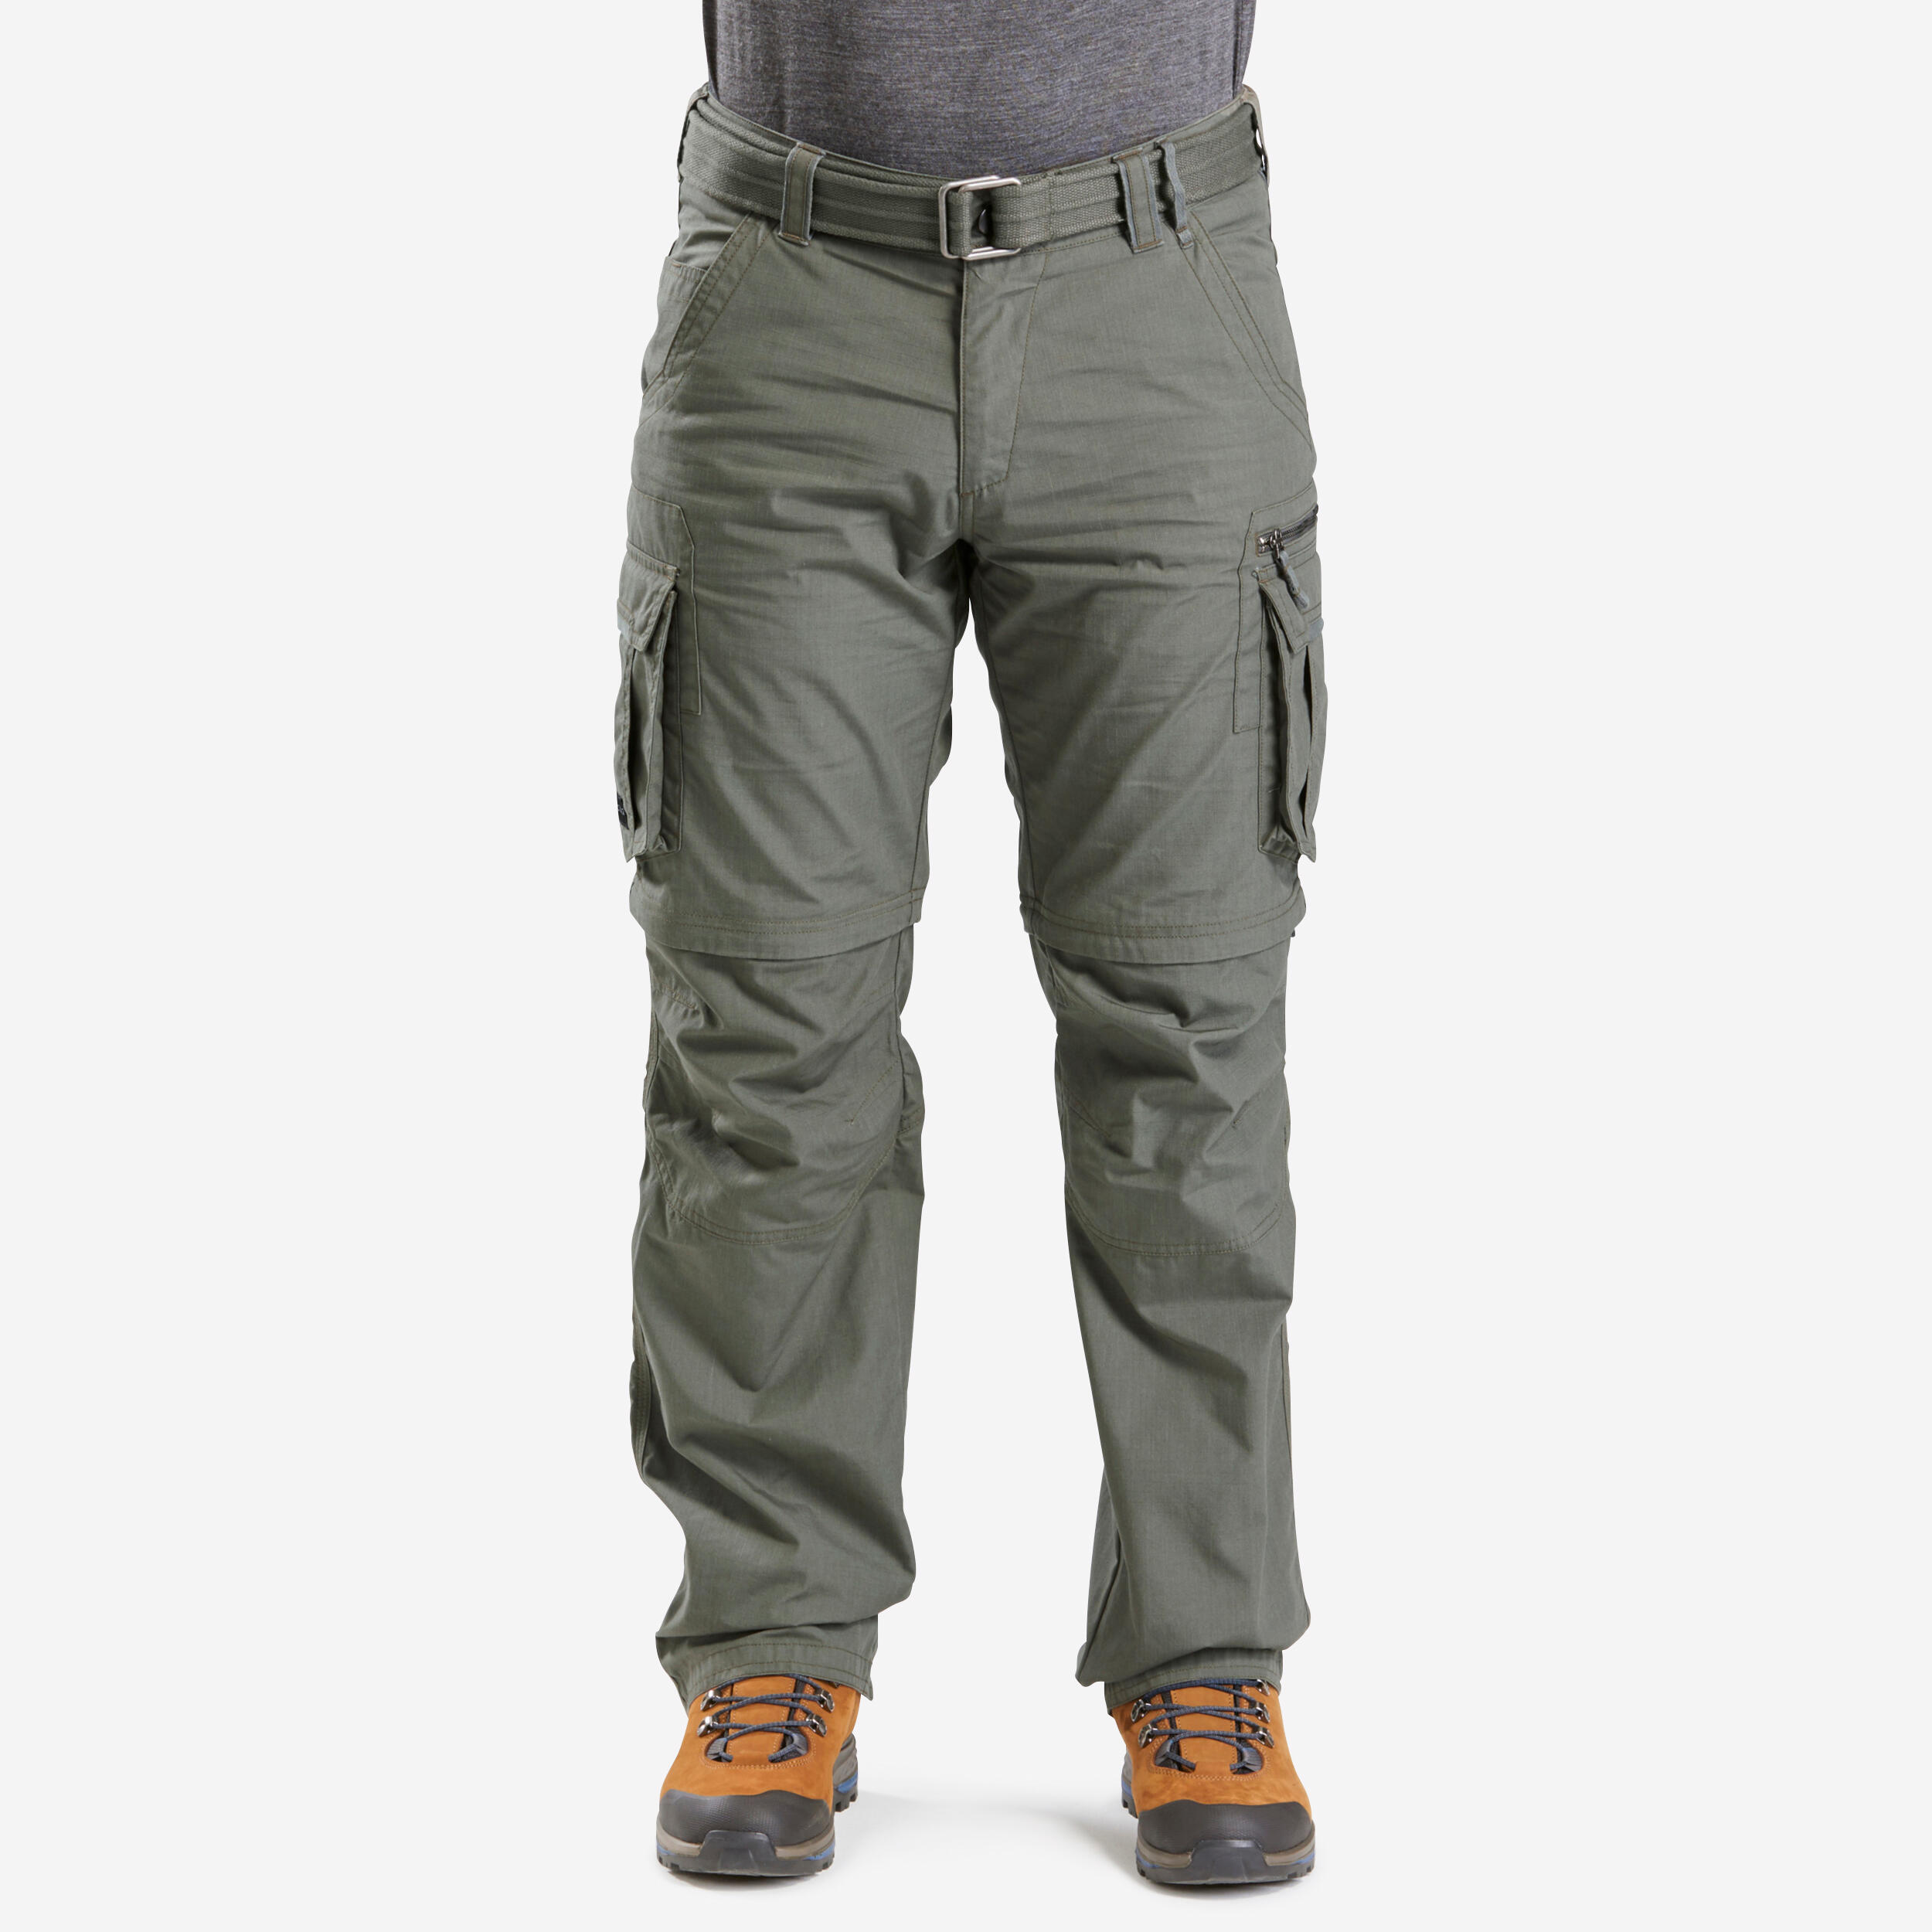 Men's Travel Trekking Zip-Off Cargo Trousers - Travel 100 Zip-Off - khaki 1/14